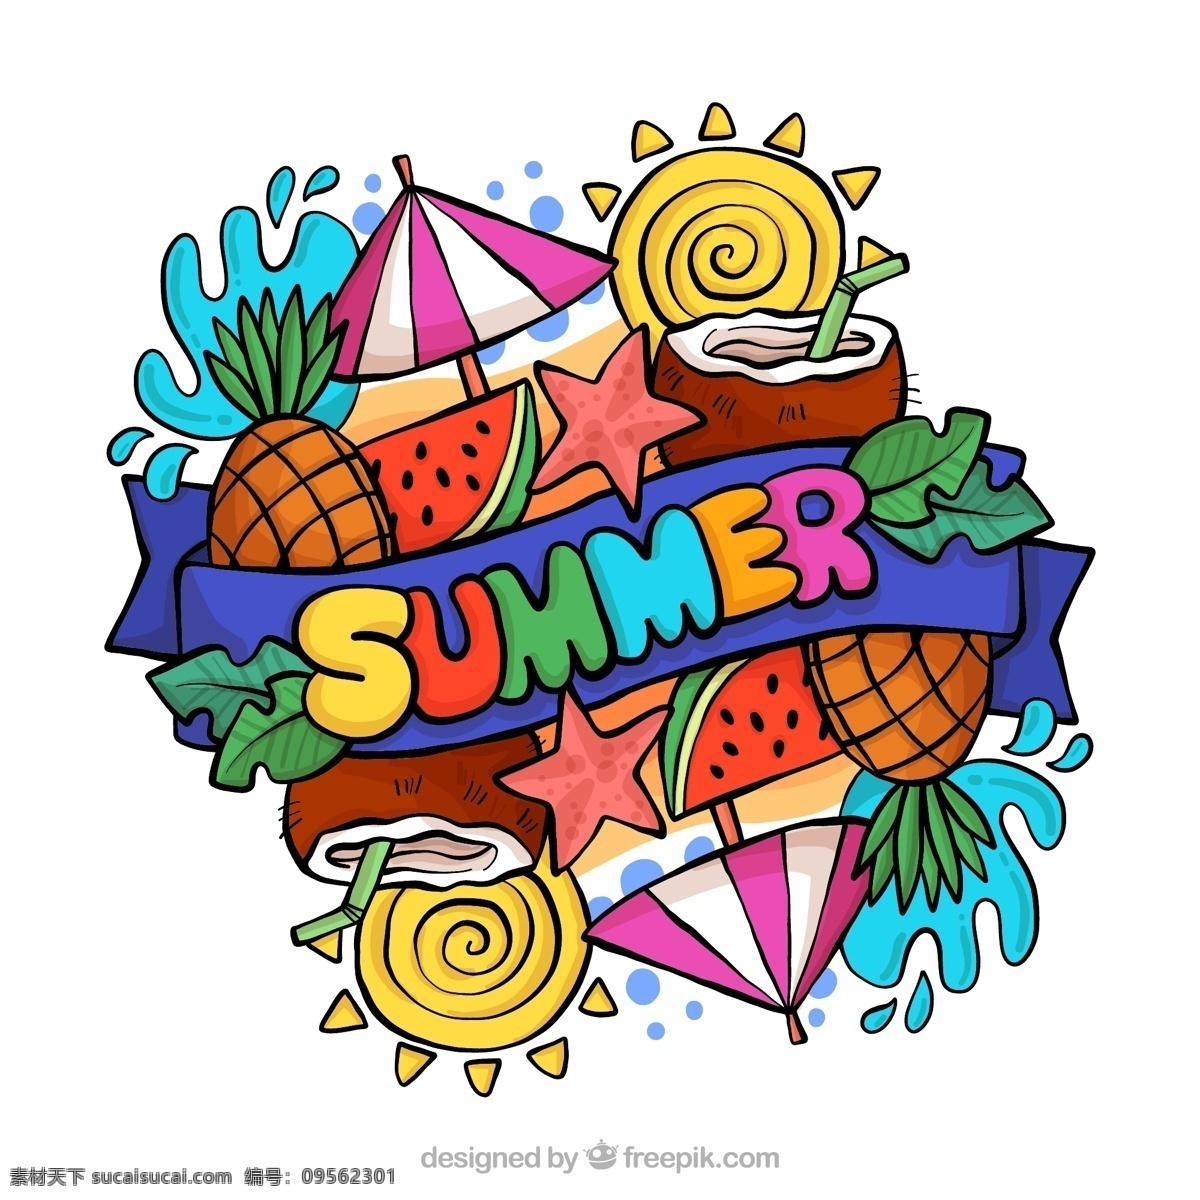 彩色 夏季 元素 summer 艺术 字 大海 艺术字 棕榈树叶 树叶 西瓜 凤梨 遮阳伞 太阳 海星 椰子汁 椰子 文化艺术 节日庆祝